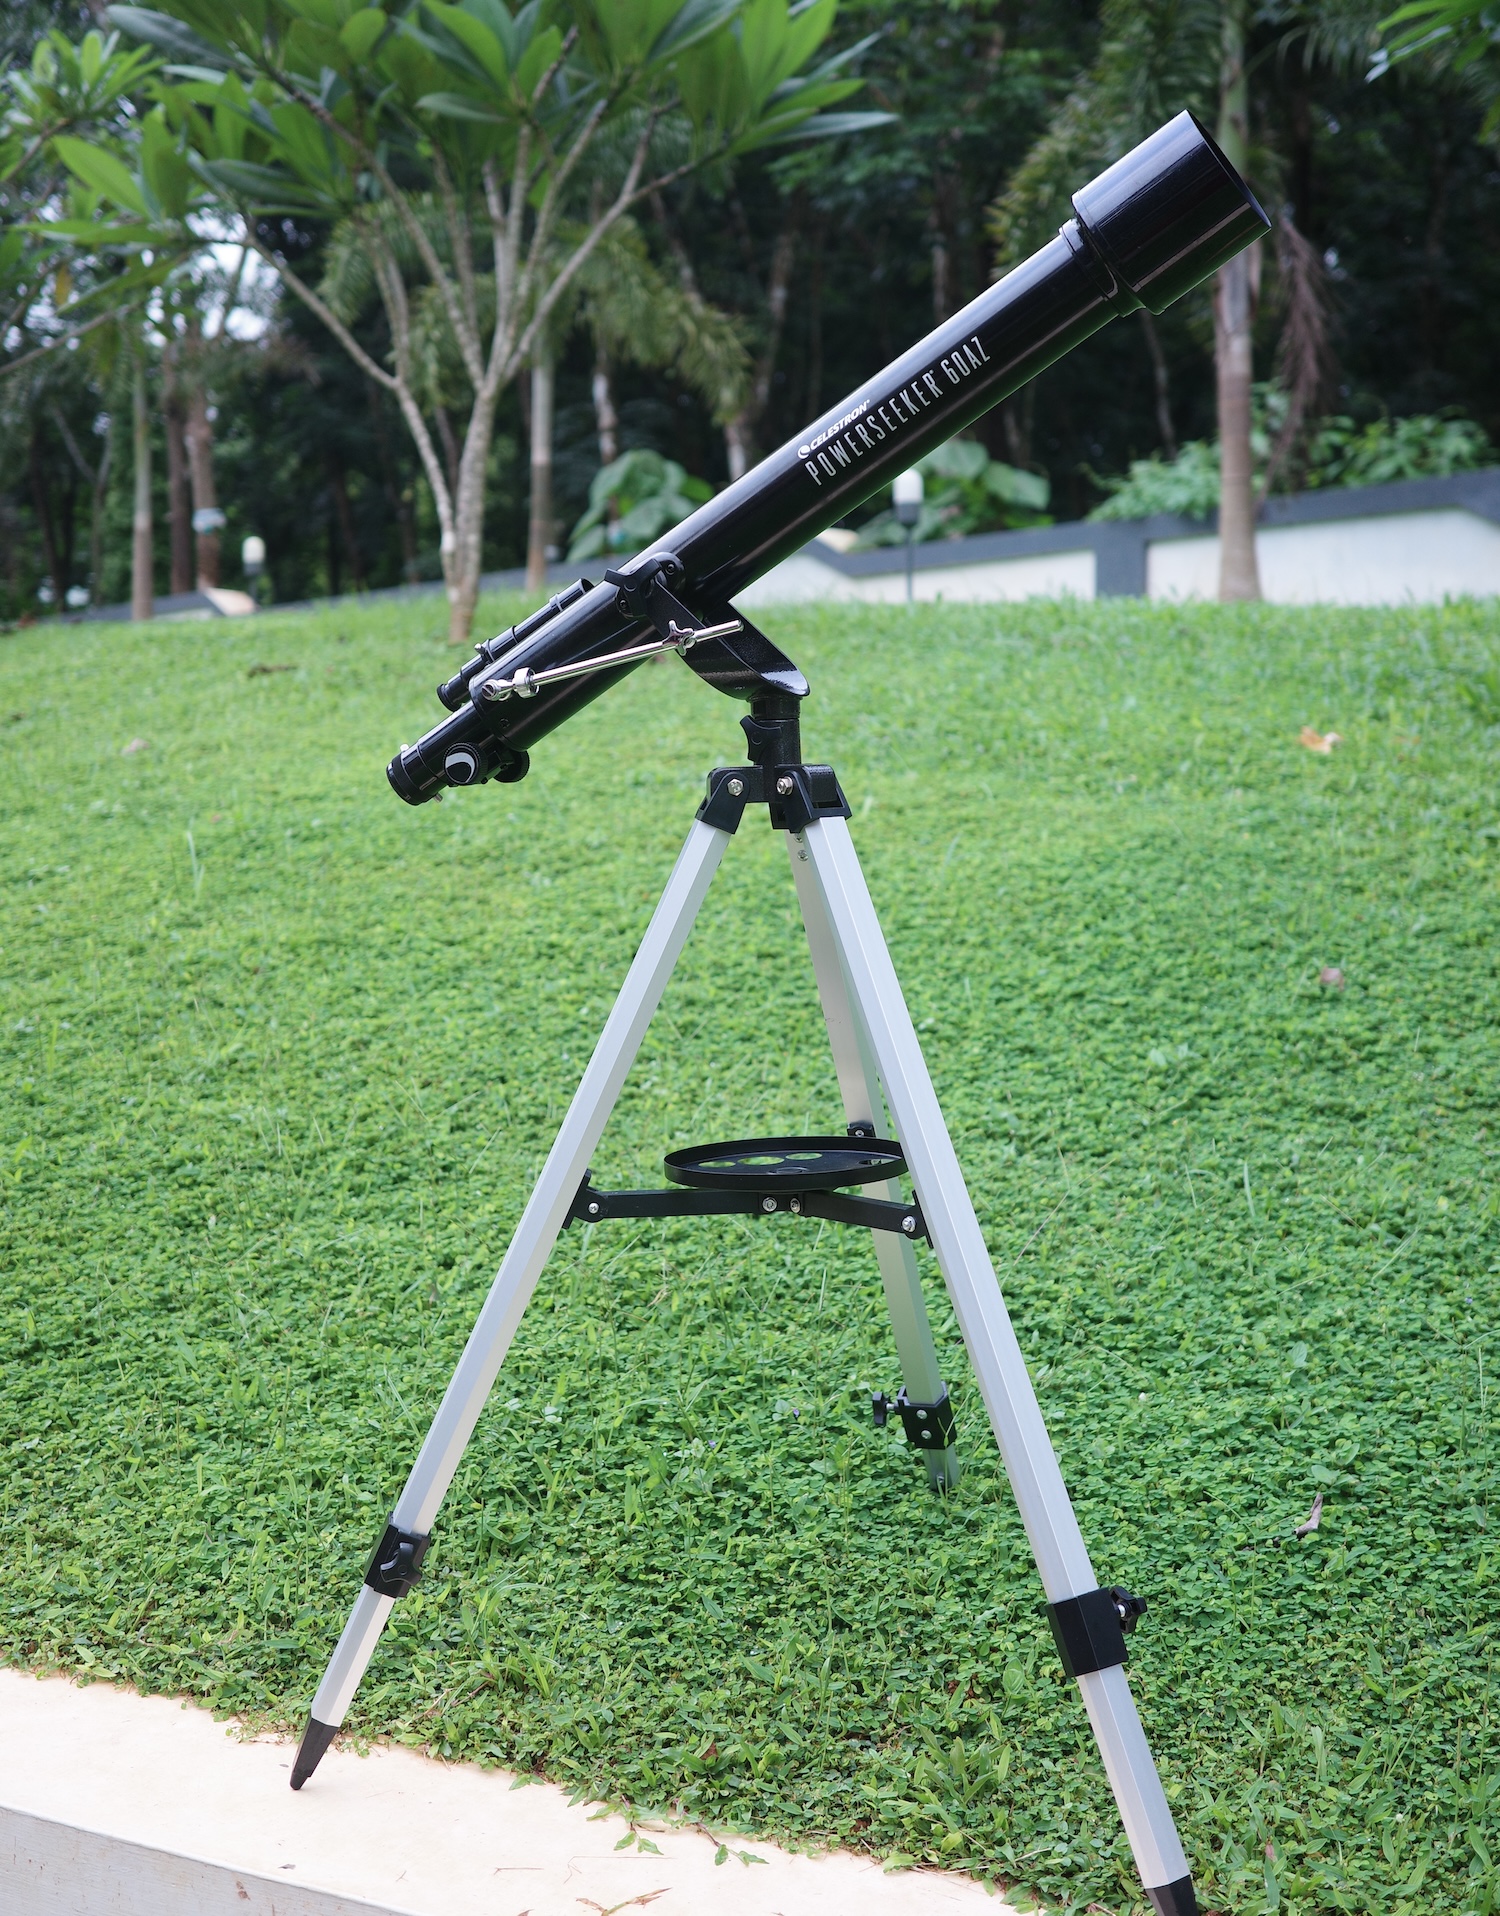 Celestron Powerseeker 60AZ telescope